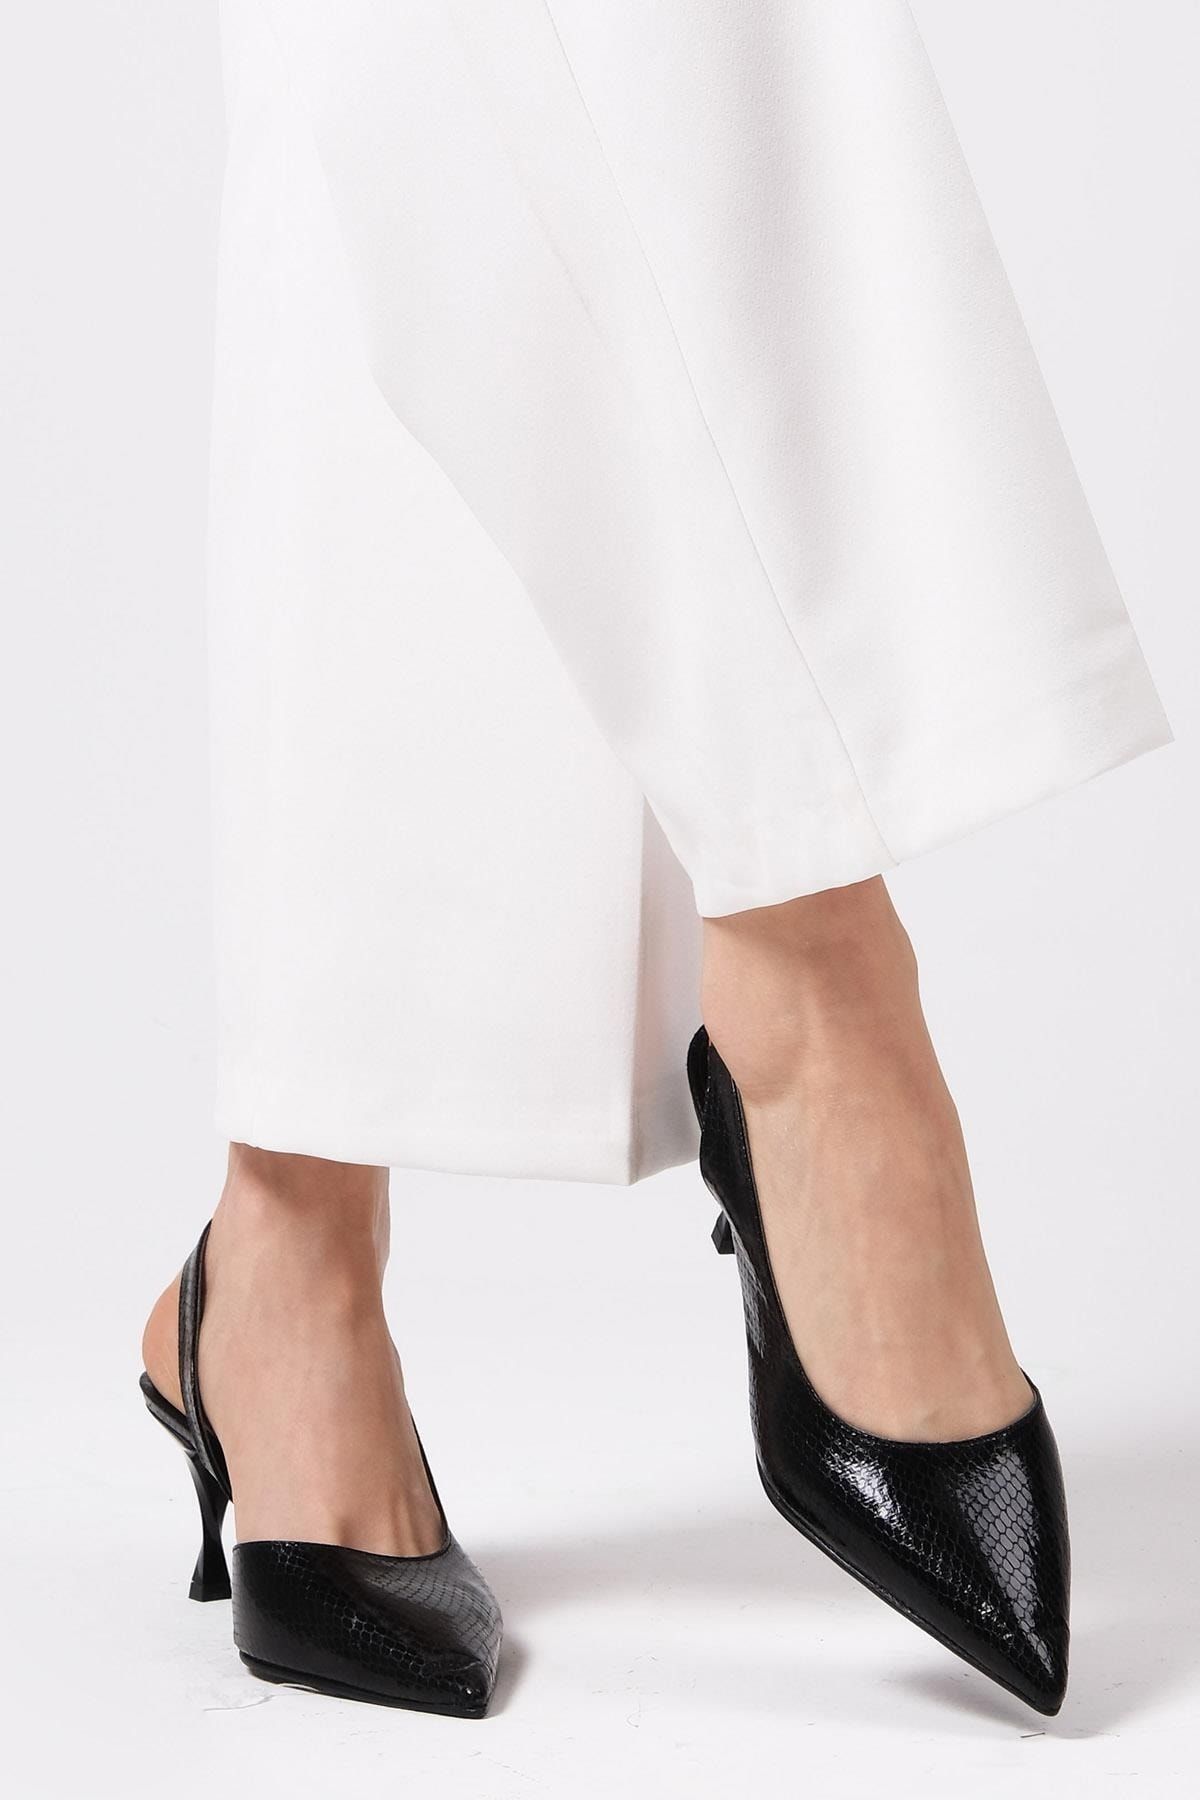 Mio Gusto Metalik Siyah Renk Yılan Derisi Desenli Kadın Topuklu Ayakkabı